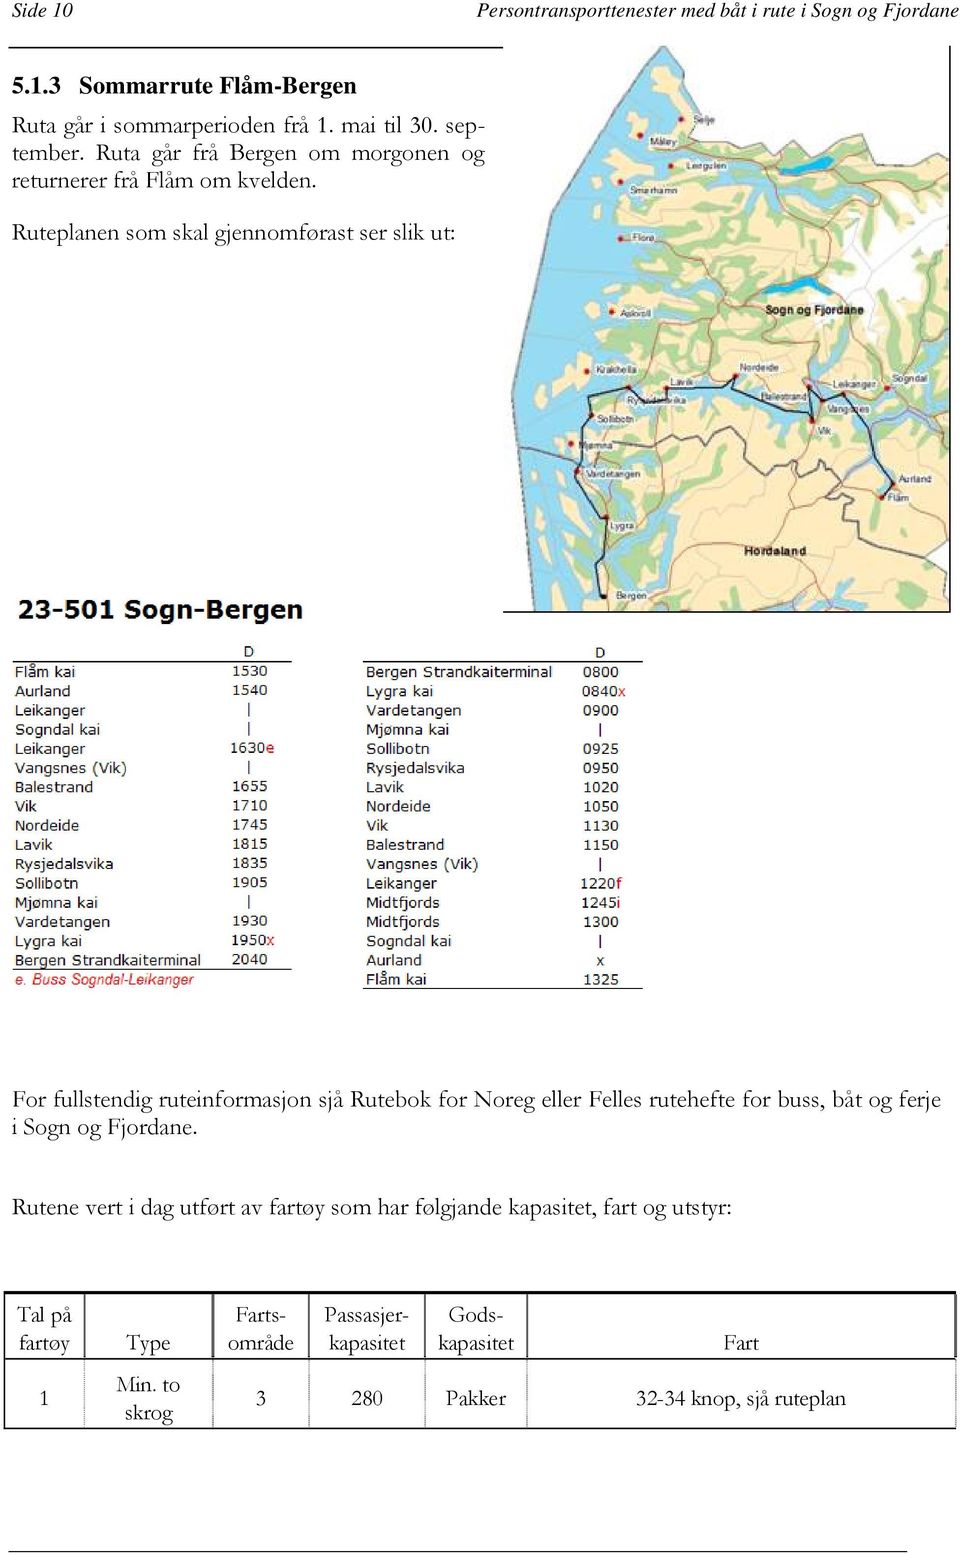 Ruteplanen som skal gjennomførast ser slik ut: For fullstendig ruteinformasjon sjå Rutebok for Noreg eller Felles rutehefte for buss, båt og ferje